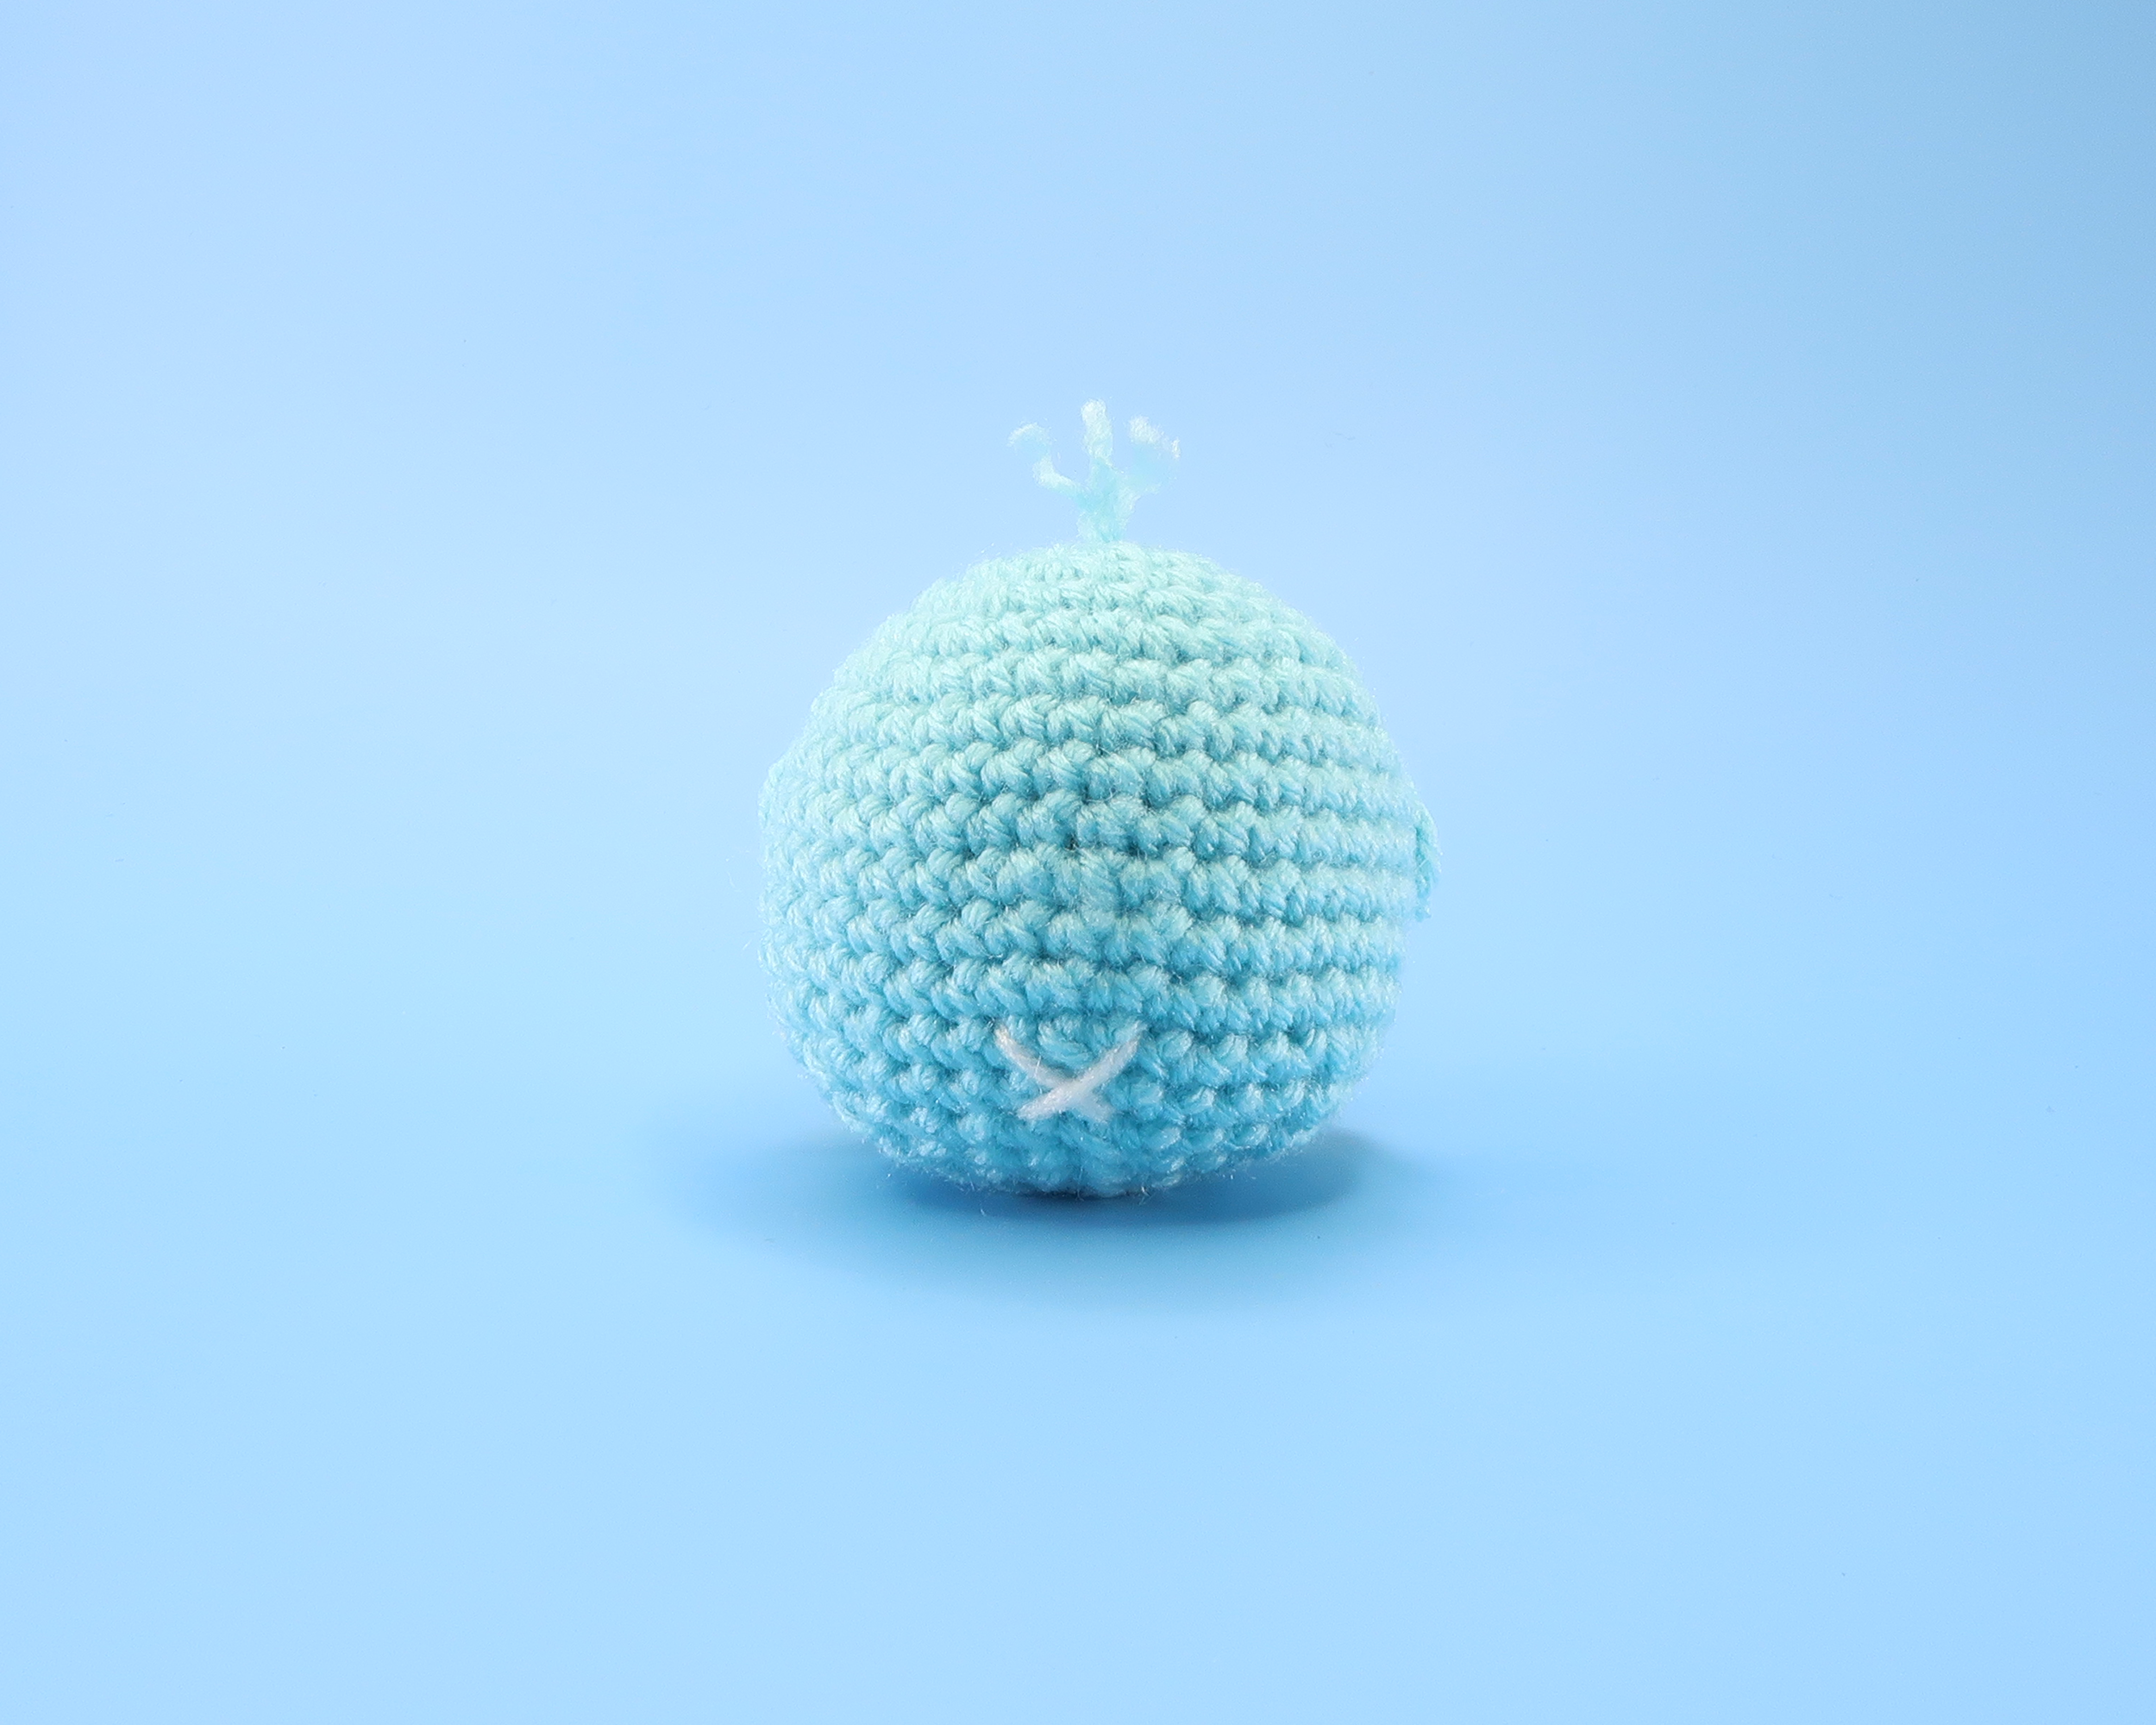 Penguin Ball Crochet Kit & Pattern